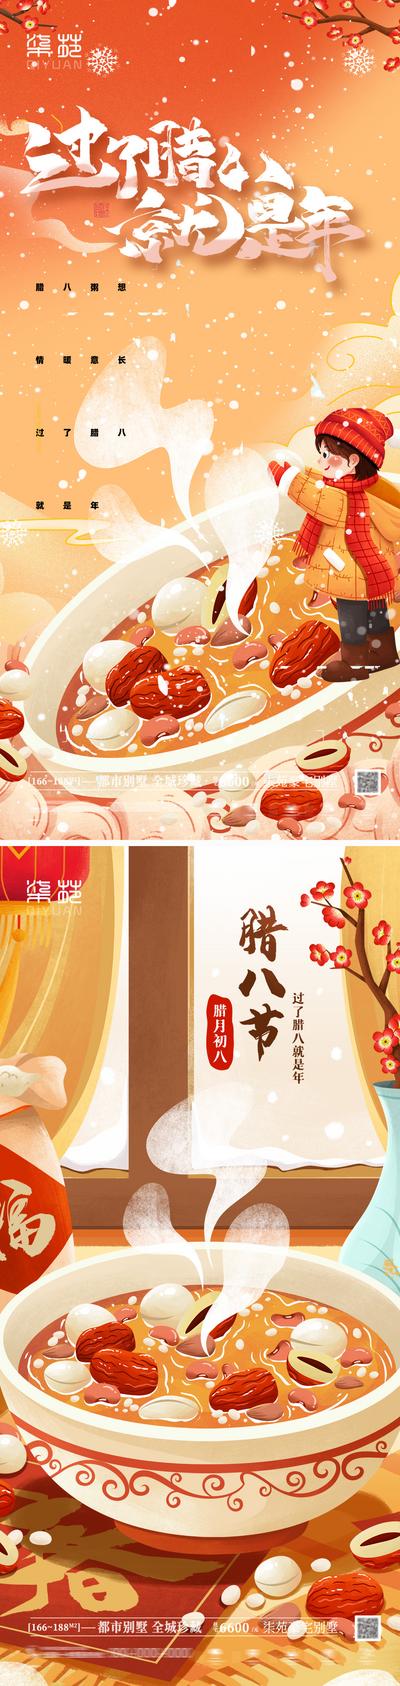 南门网 海报 房地产 中国传统节日 腊八节 插画 人物 腊八粥 灯笼